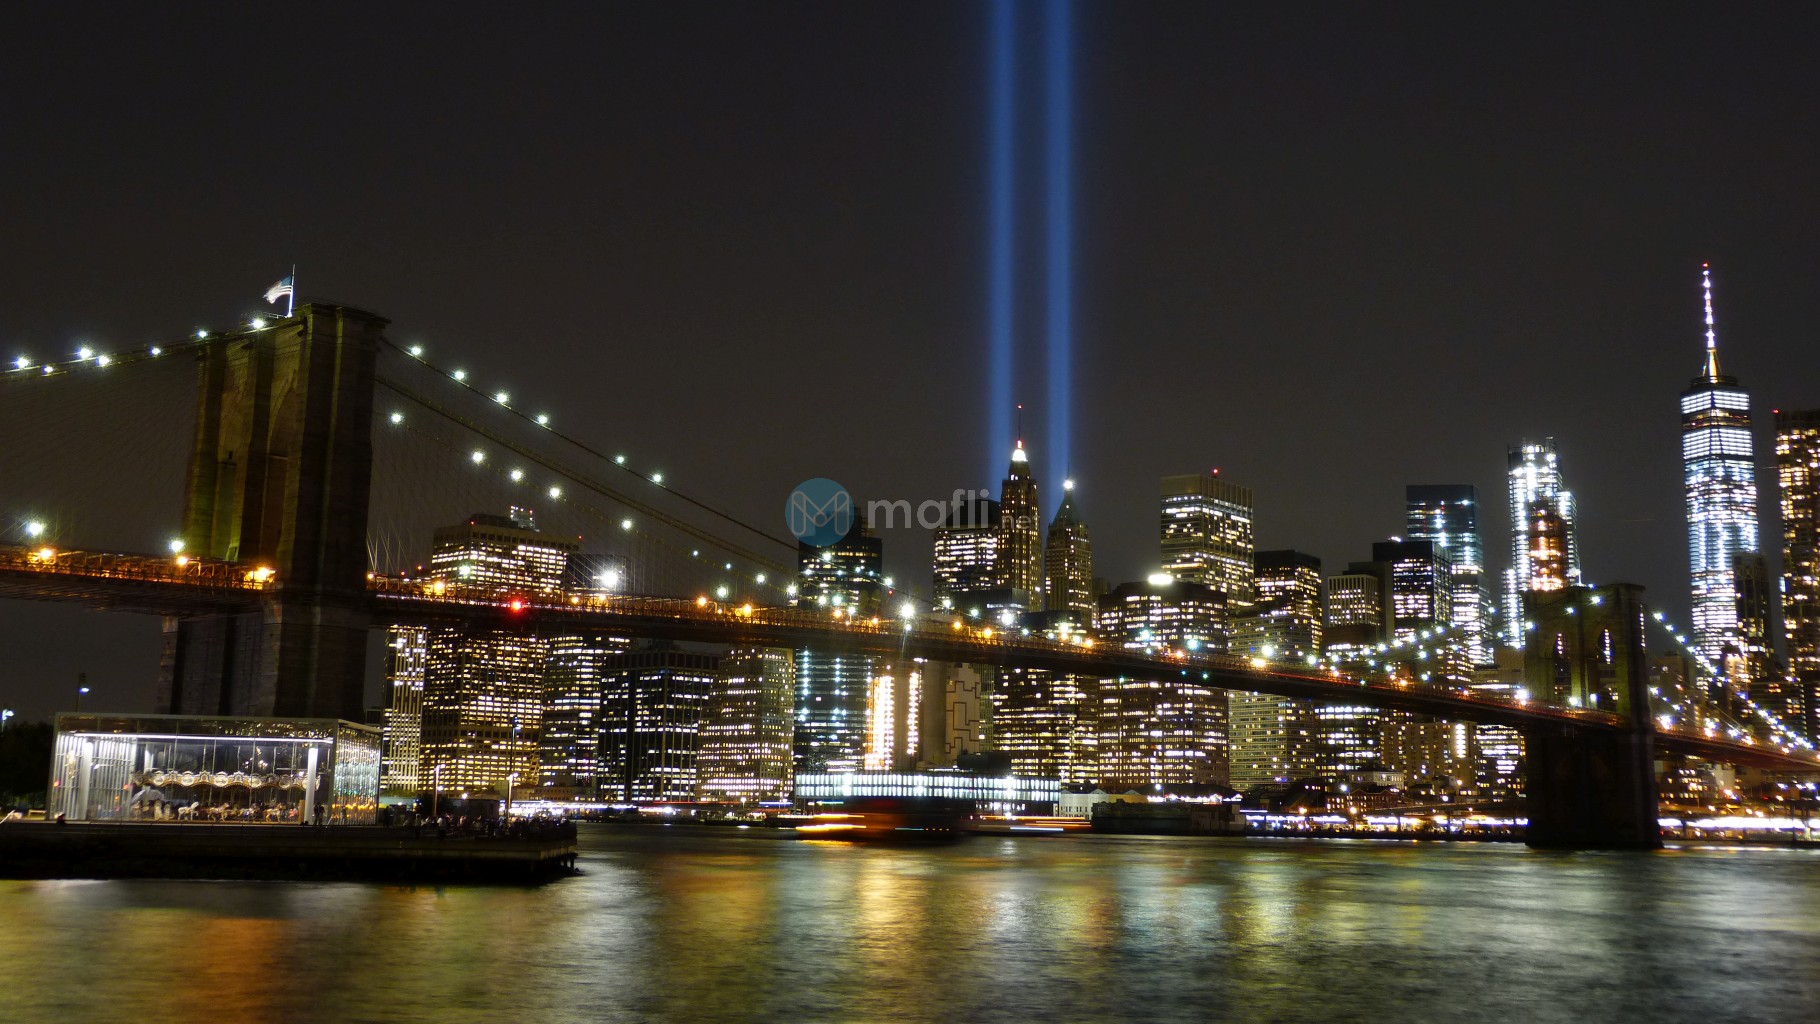 New York City, Tribute in Light 2017